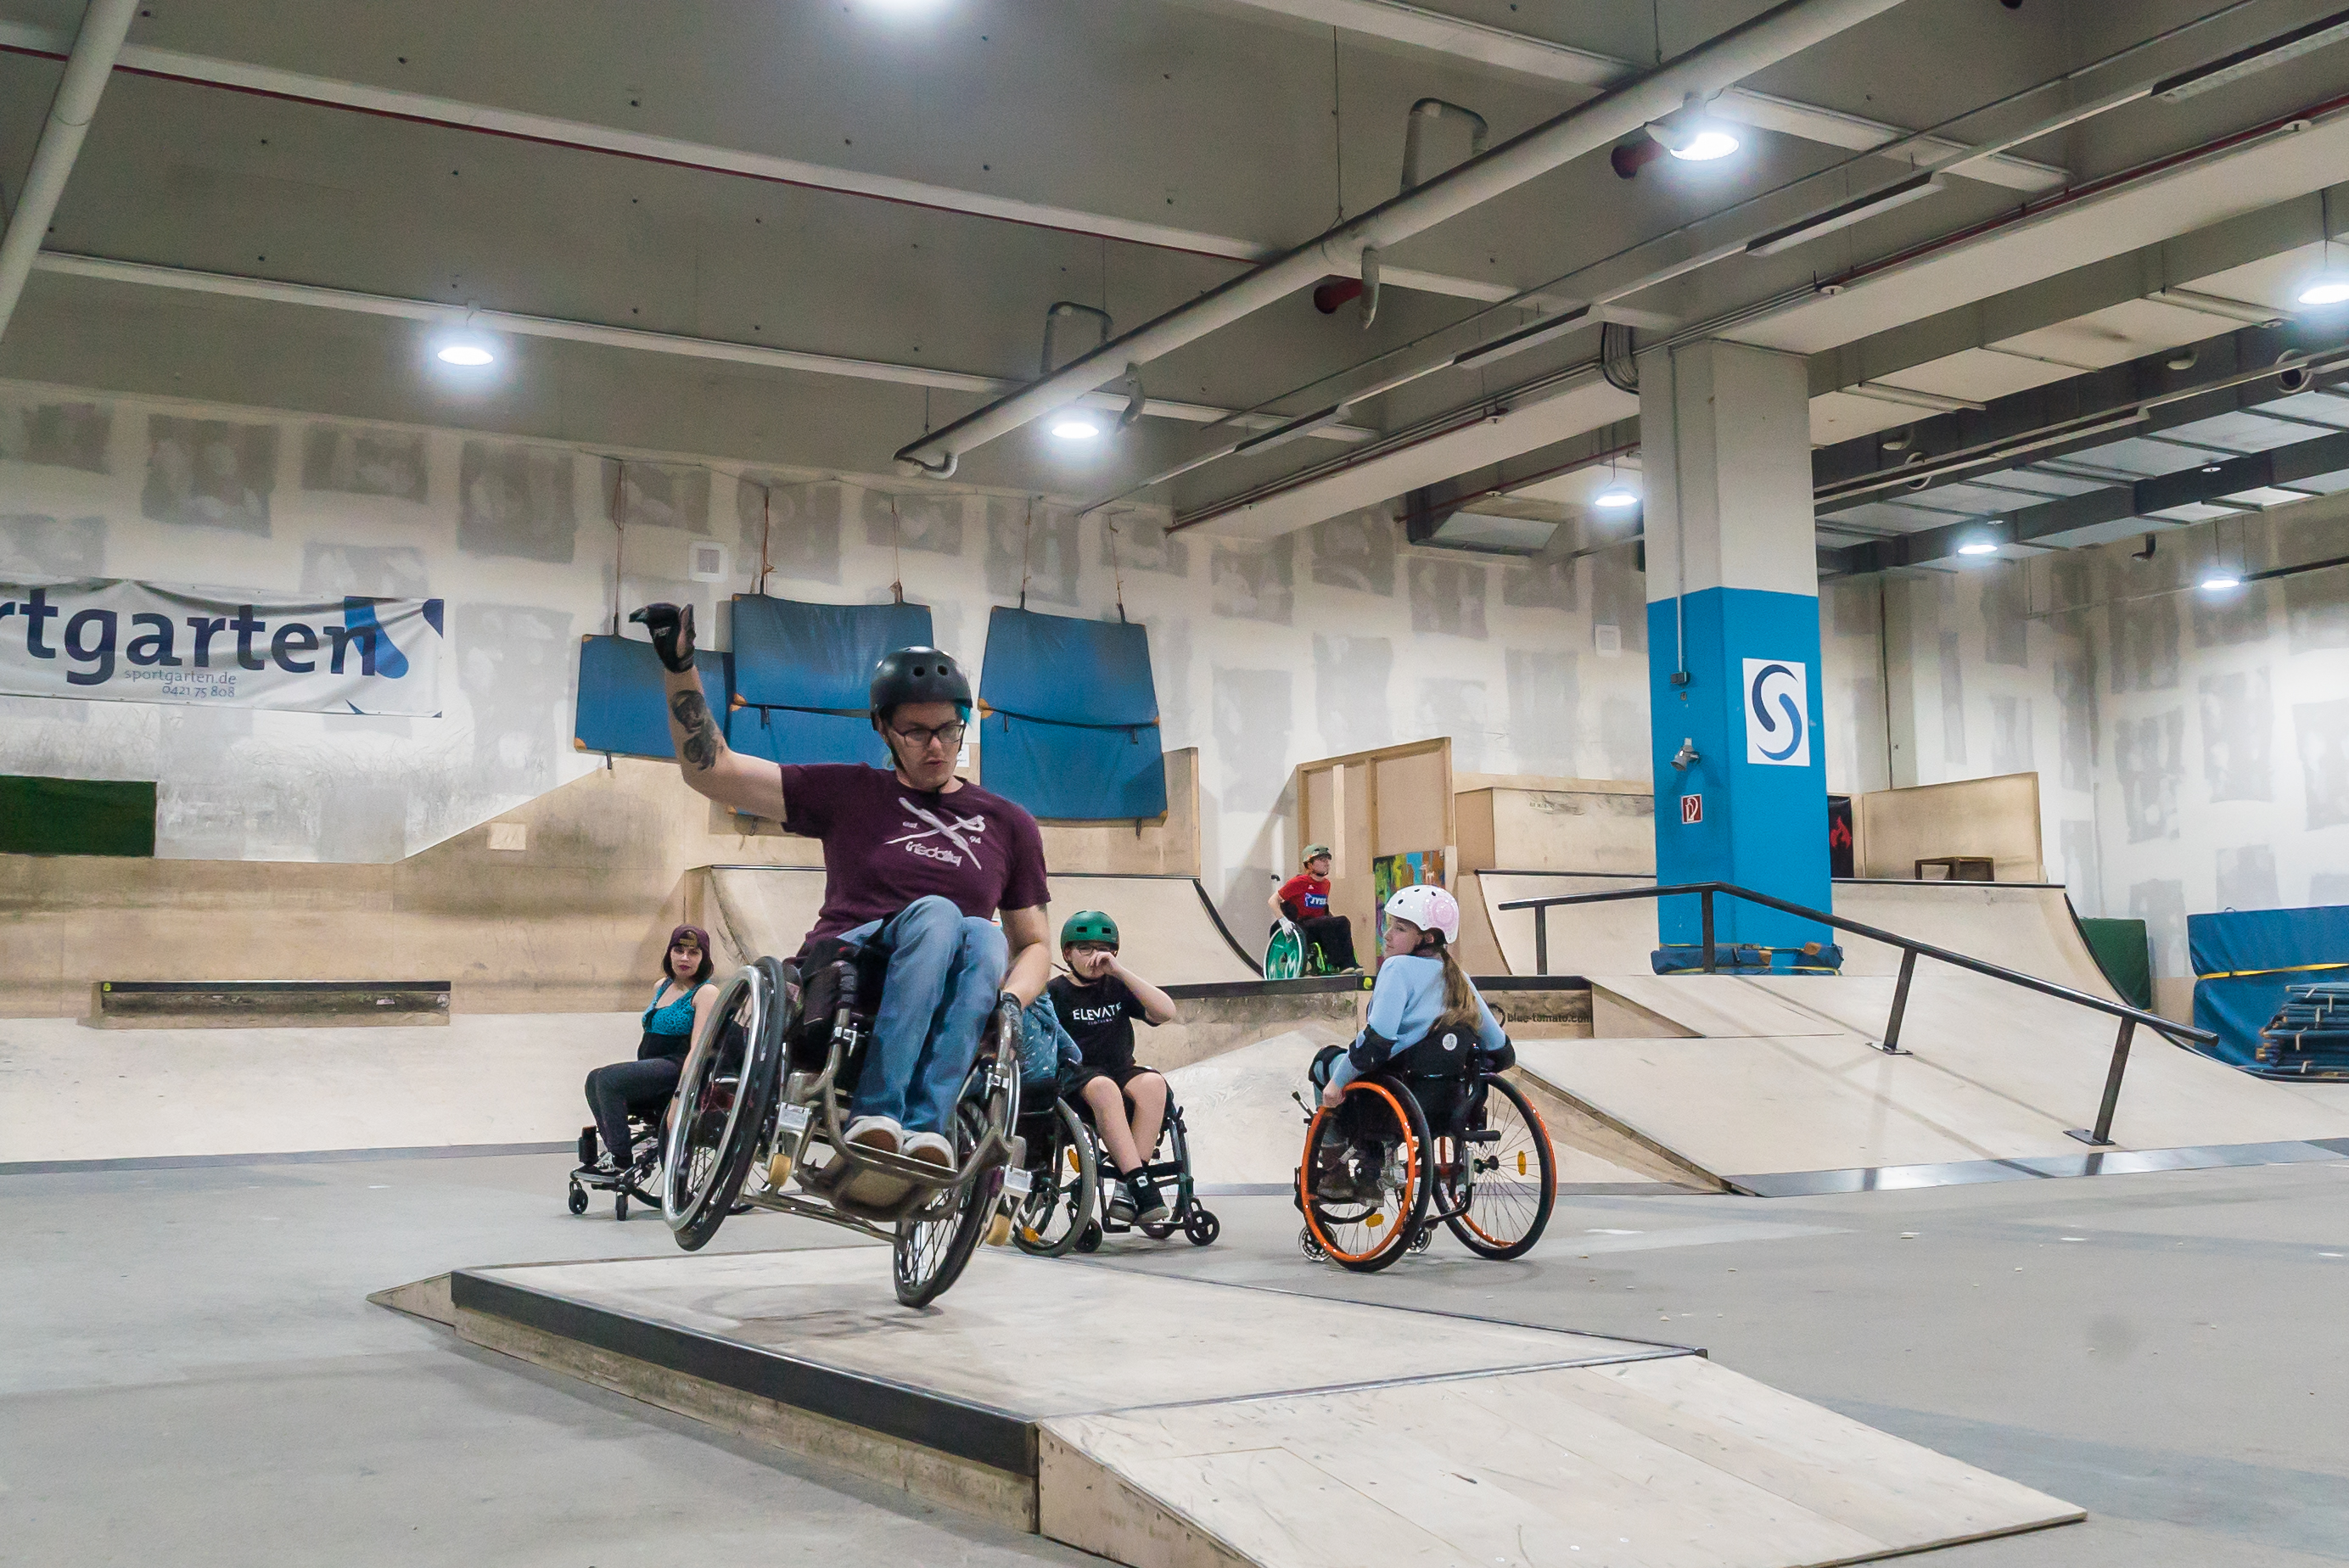 Fünf Rollstuhlfahrer:innen fahren in der Skatehalle am Sportgarten über Rampen und Pipes.